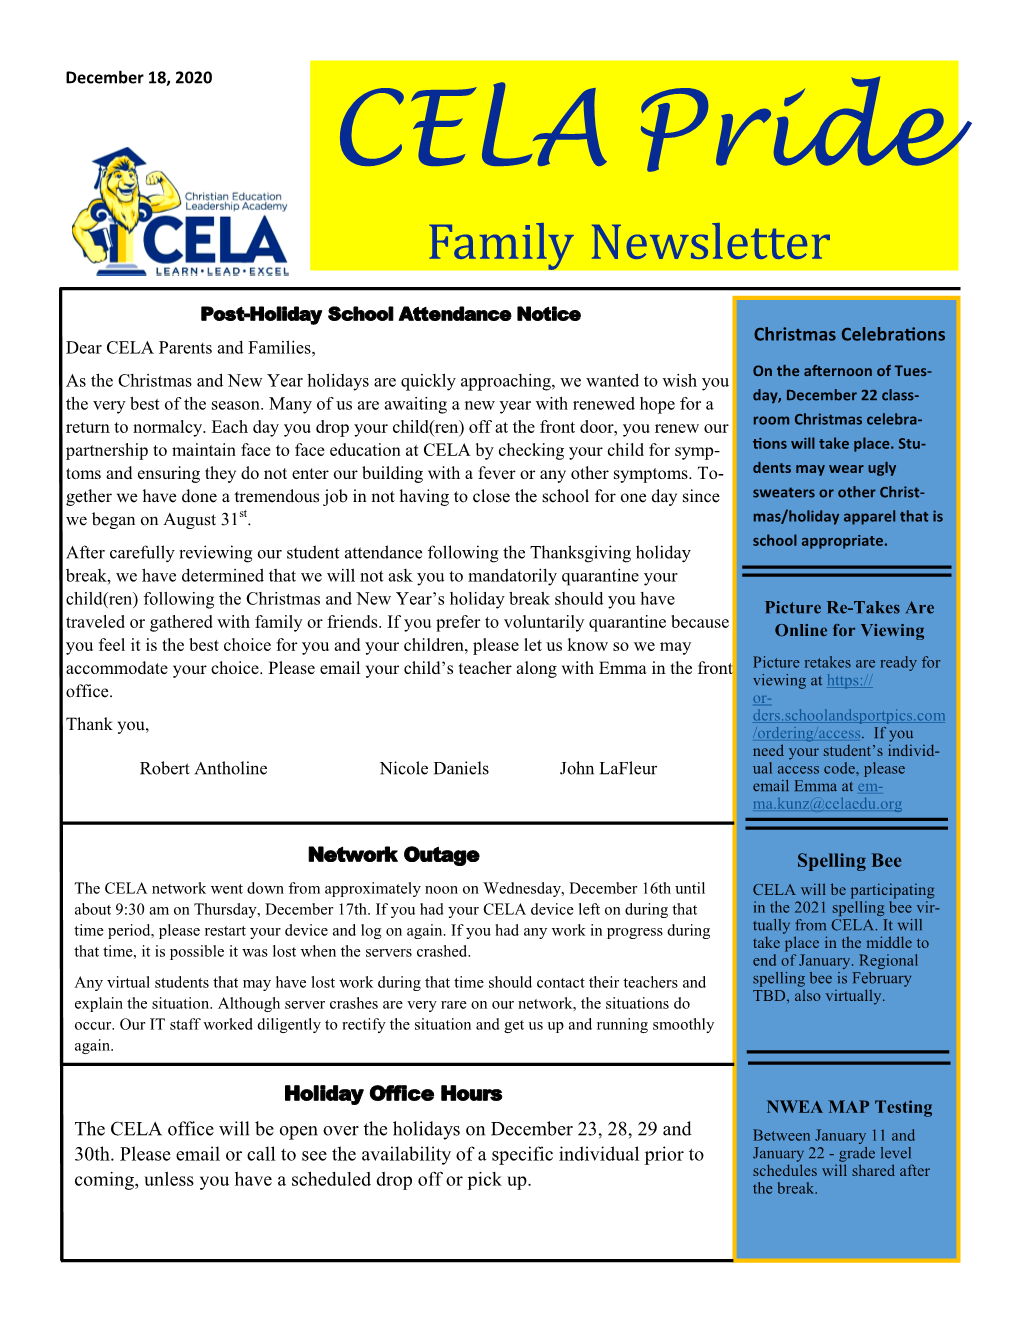 CELA Pride Family Newsletter